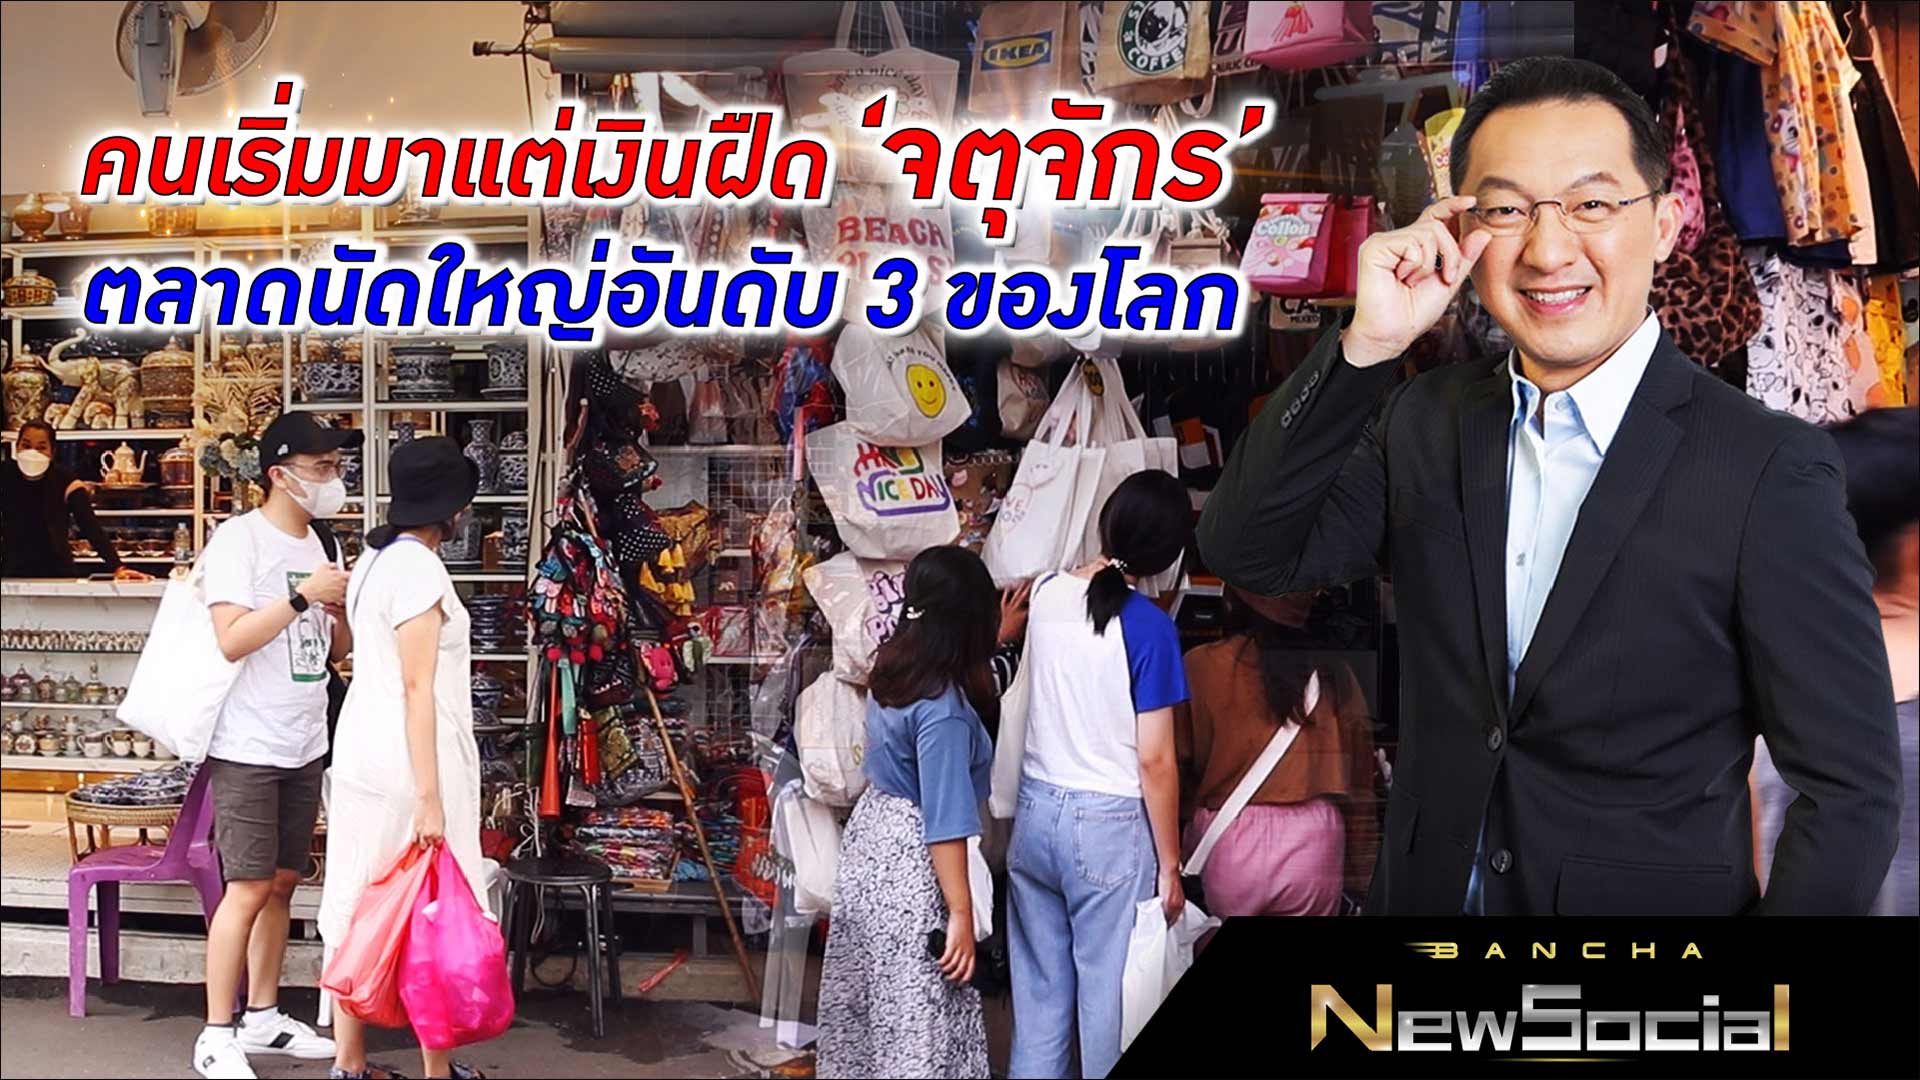 คนเริ่มมาแต่เงินฝืด ‘จตุจักร’ ตลาดนัดในไทยใหญ่อันดับ 3 ของโลก l EP.103 FULL l Bancha NewSocial